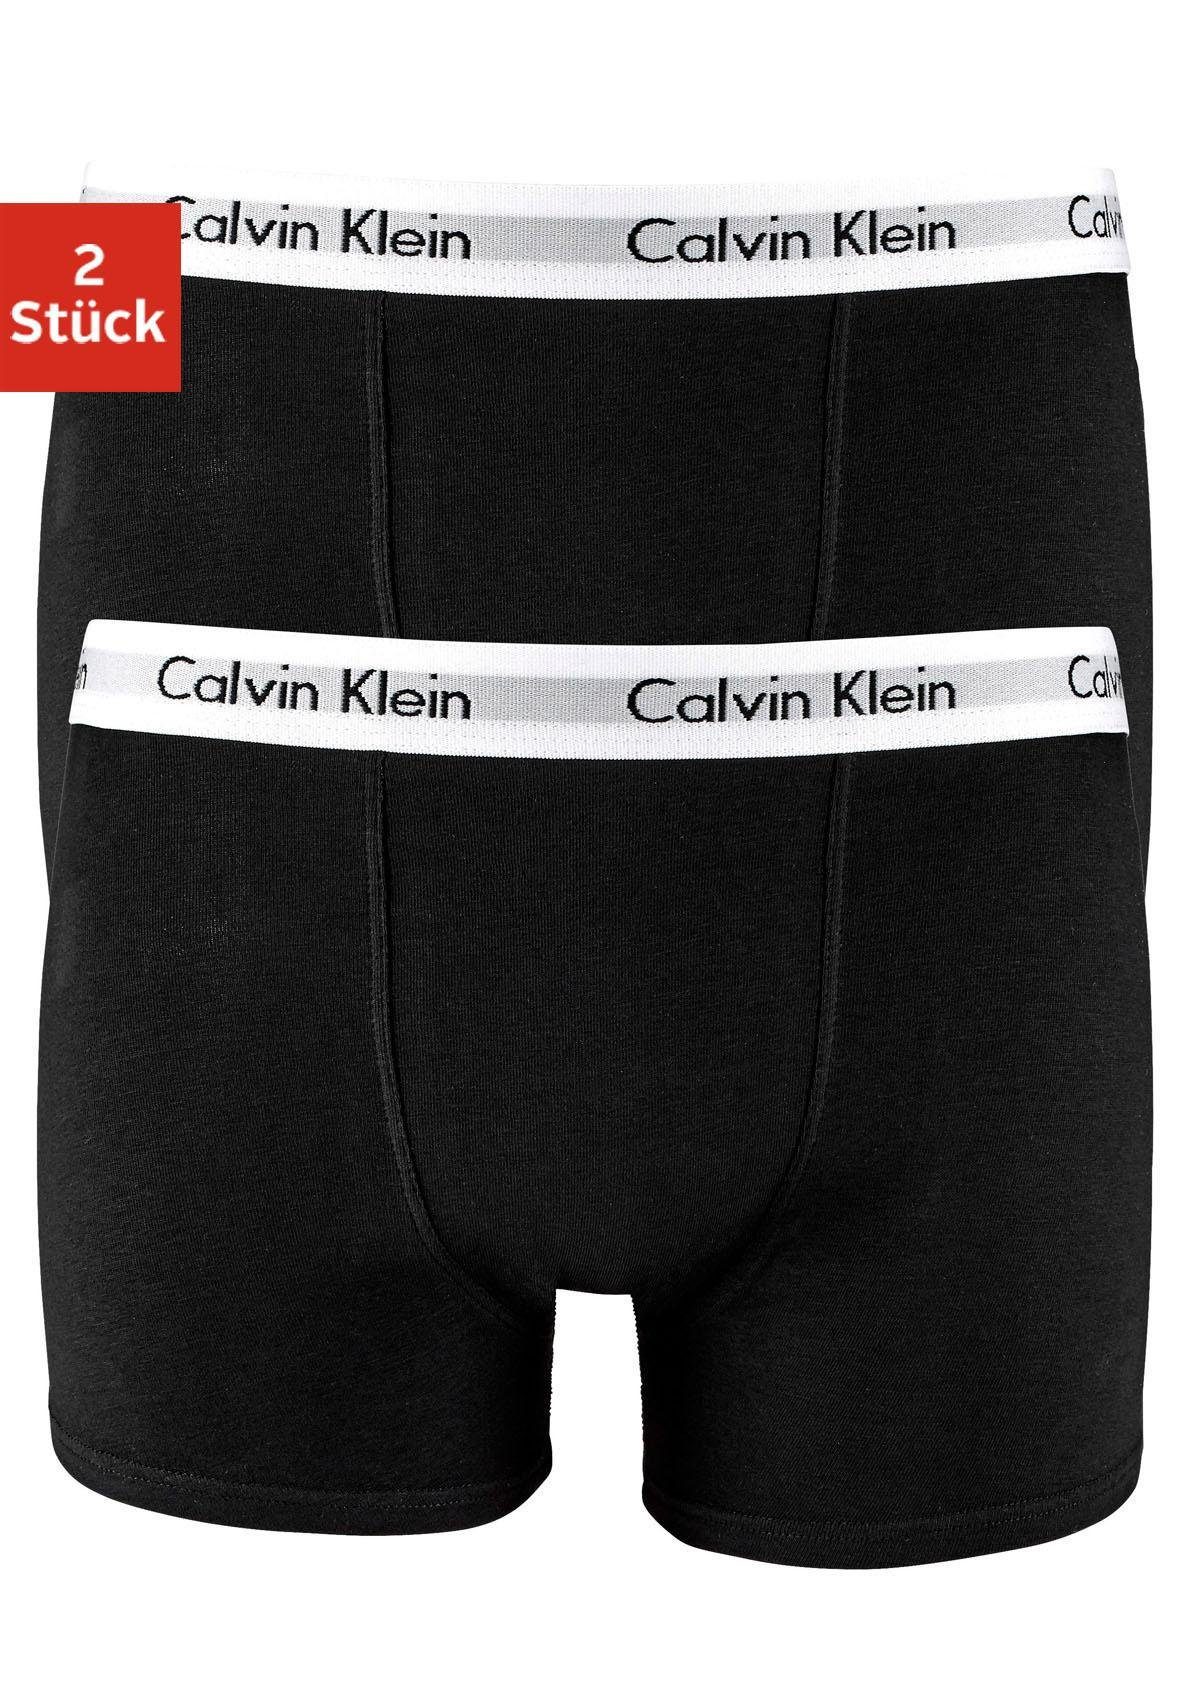 Calvin Klein Jungen Wäsche & Bademode online kaufen | OTTO